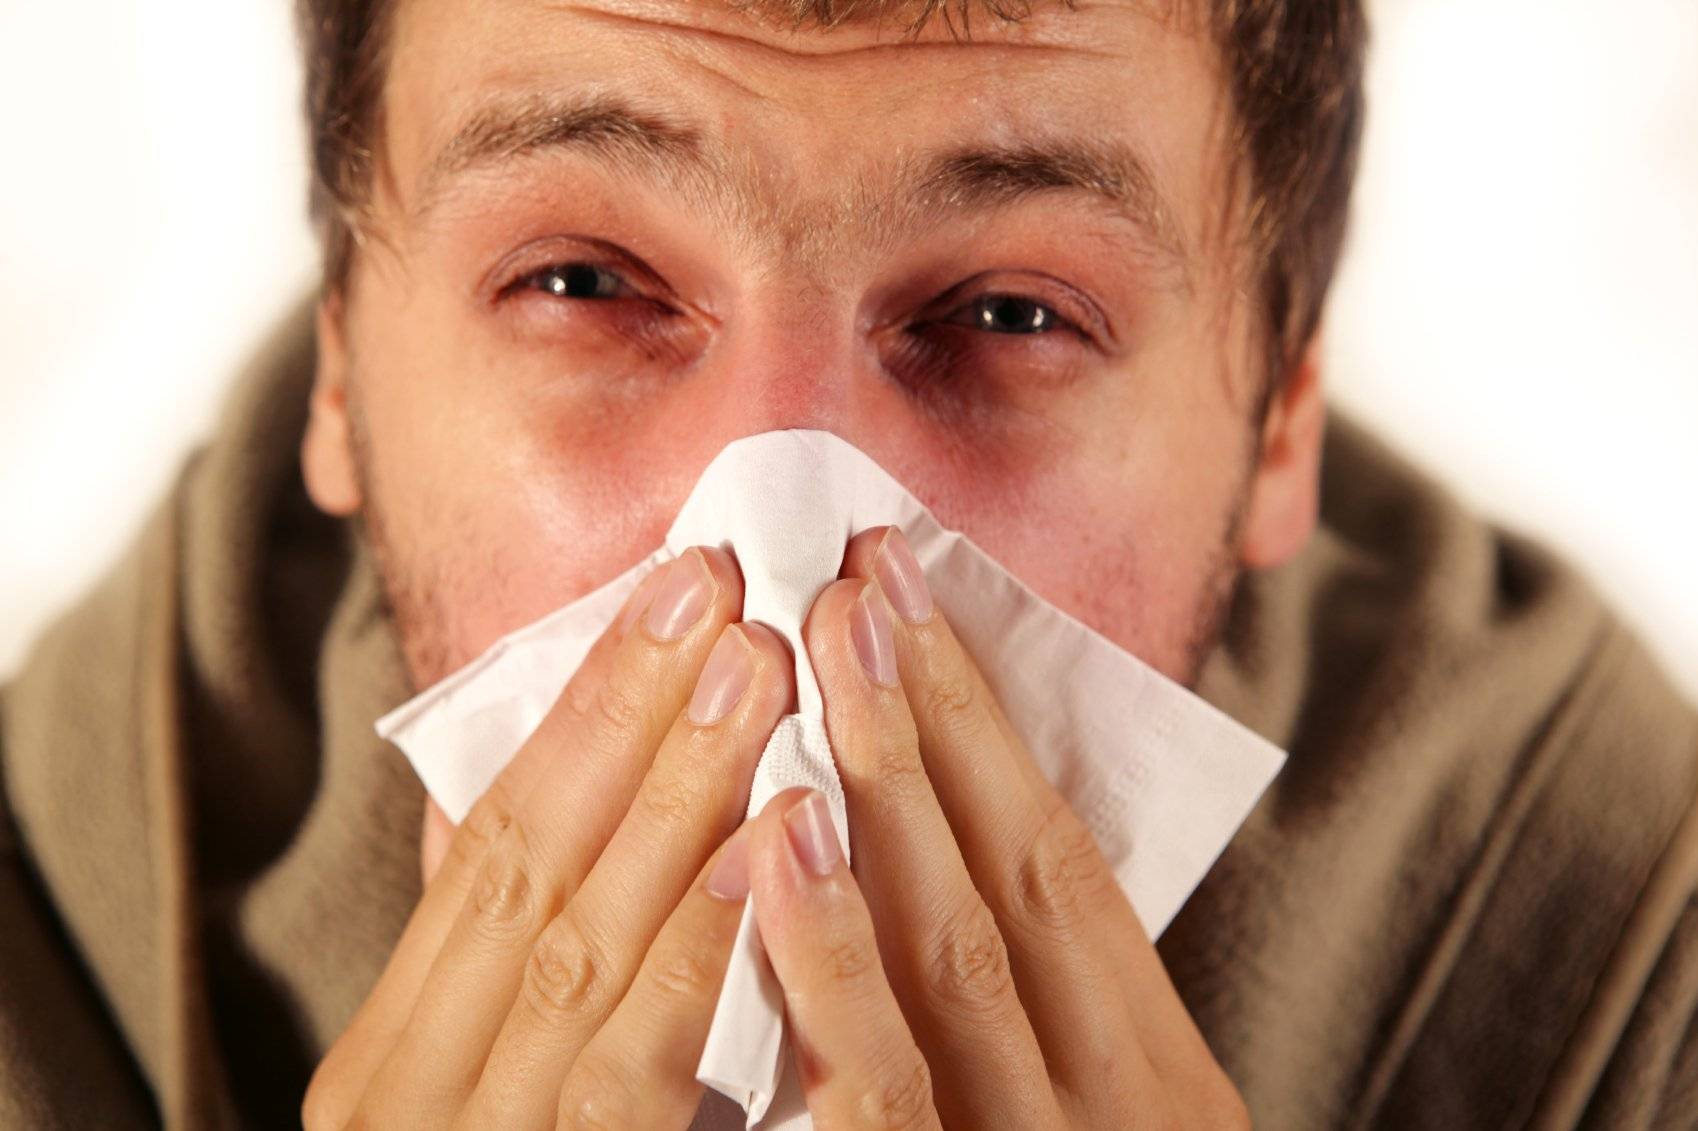 Как и чем лечить насморк при простуде?